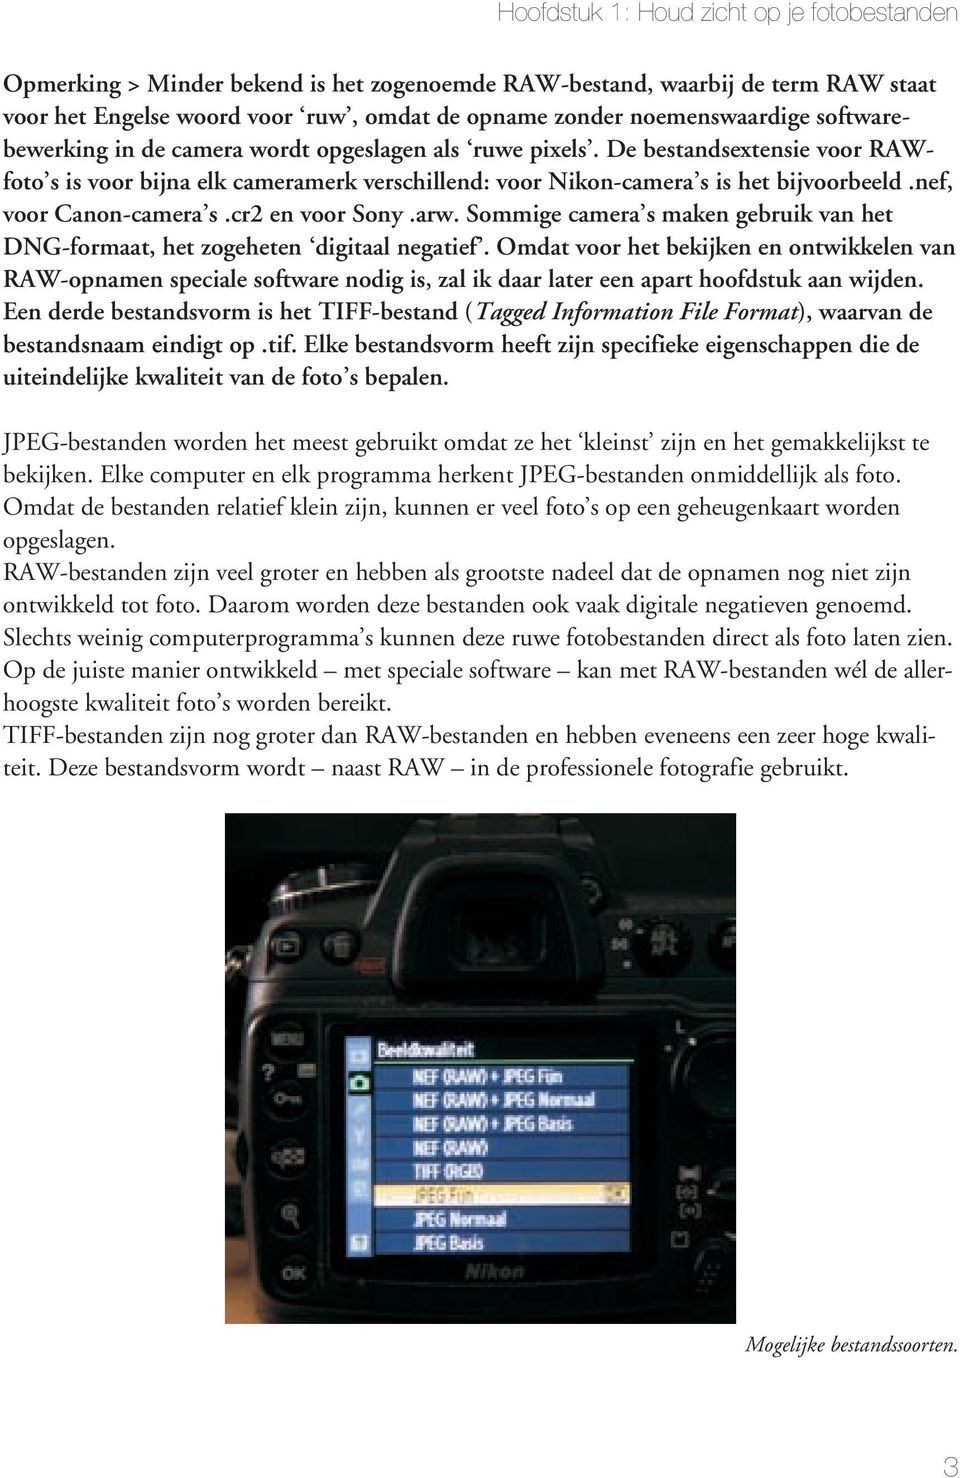 nef, voor Canon-camera s.cr2 en voor Sony.arw. Sommige camera s maken gebruik van het DNG-formaat, het zogeheten digitaal negatief.